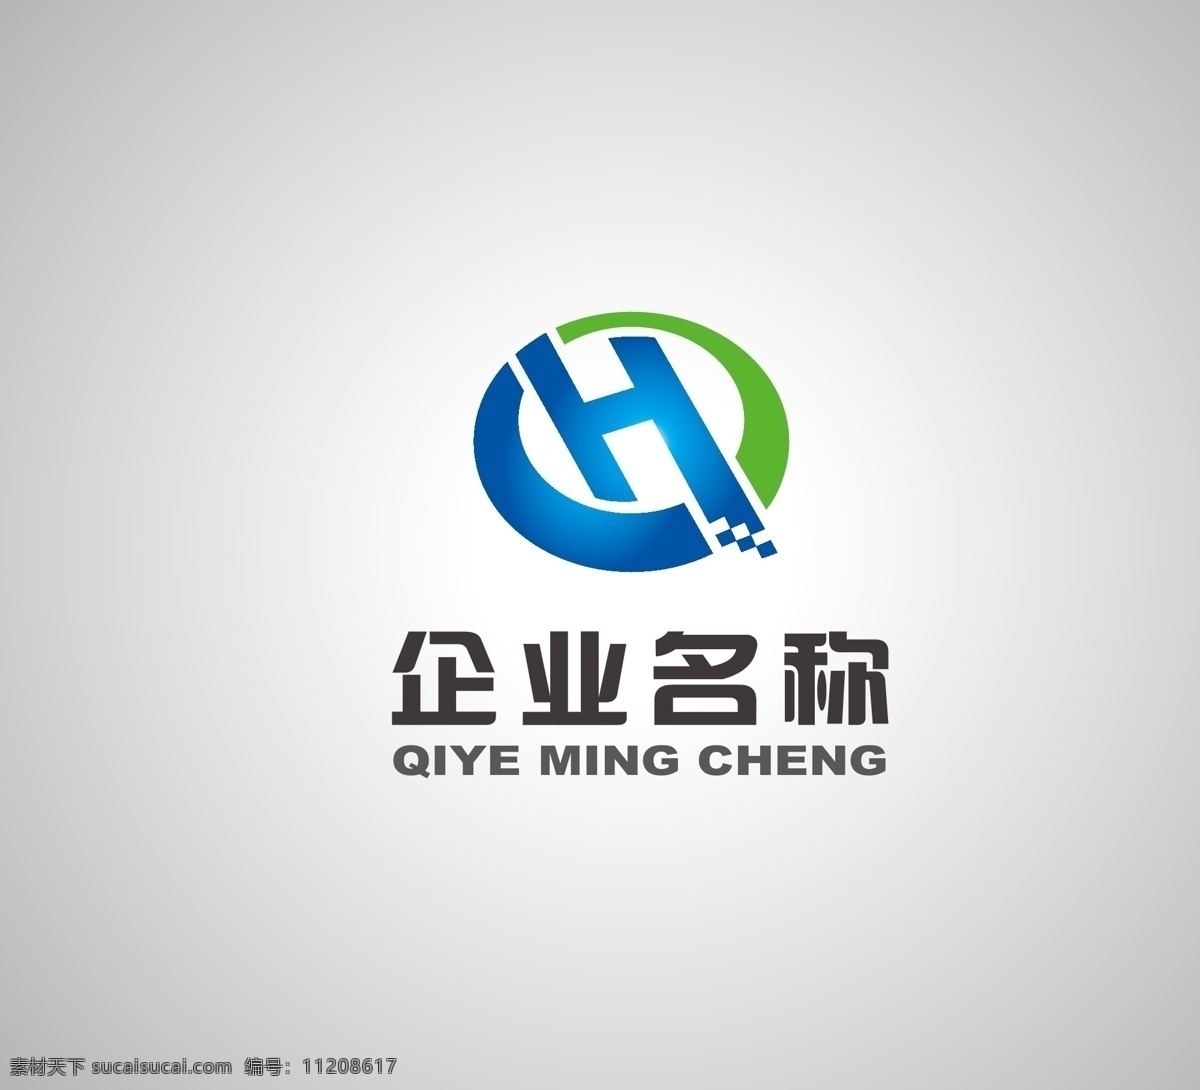 标志设计 hq标志 hqlogo hdlogo ch标志 hplogo cplogo hclogo hd标志 hp标志 cp标志 hc标志 标志图标 企业 logo 标志